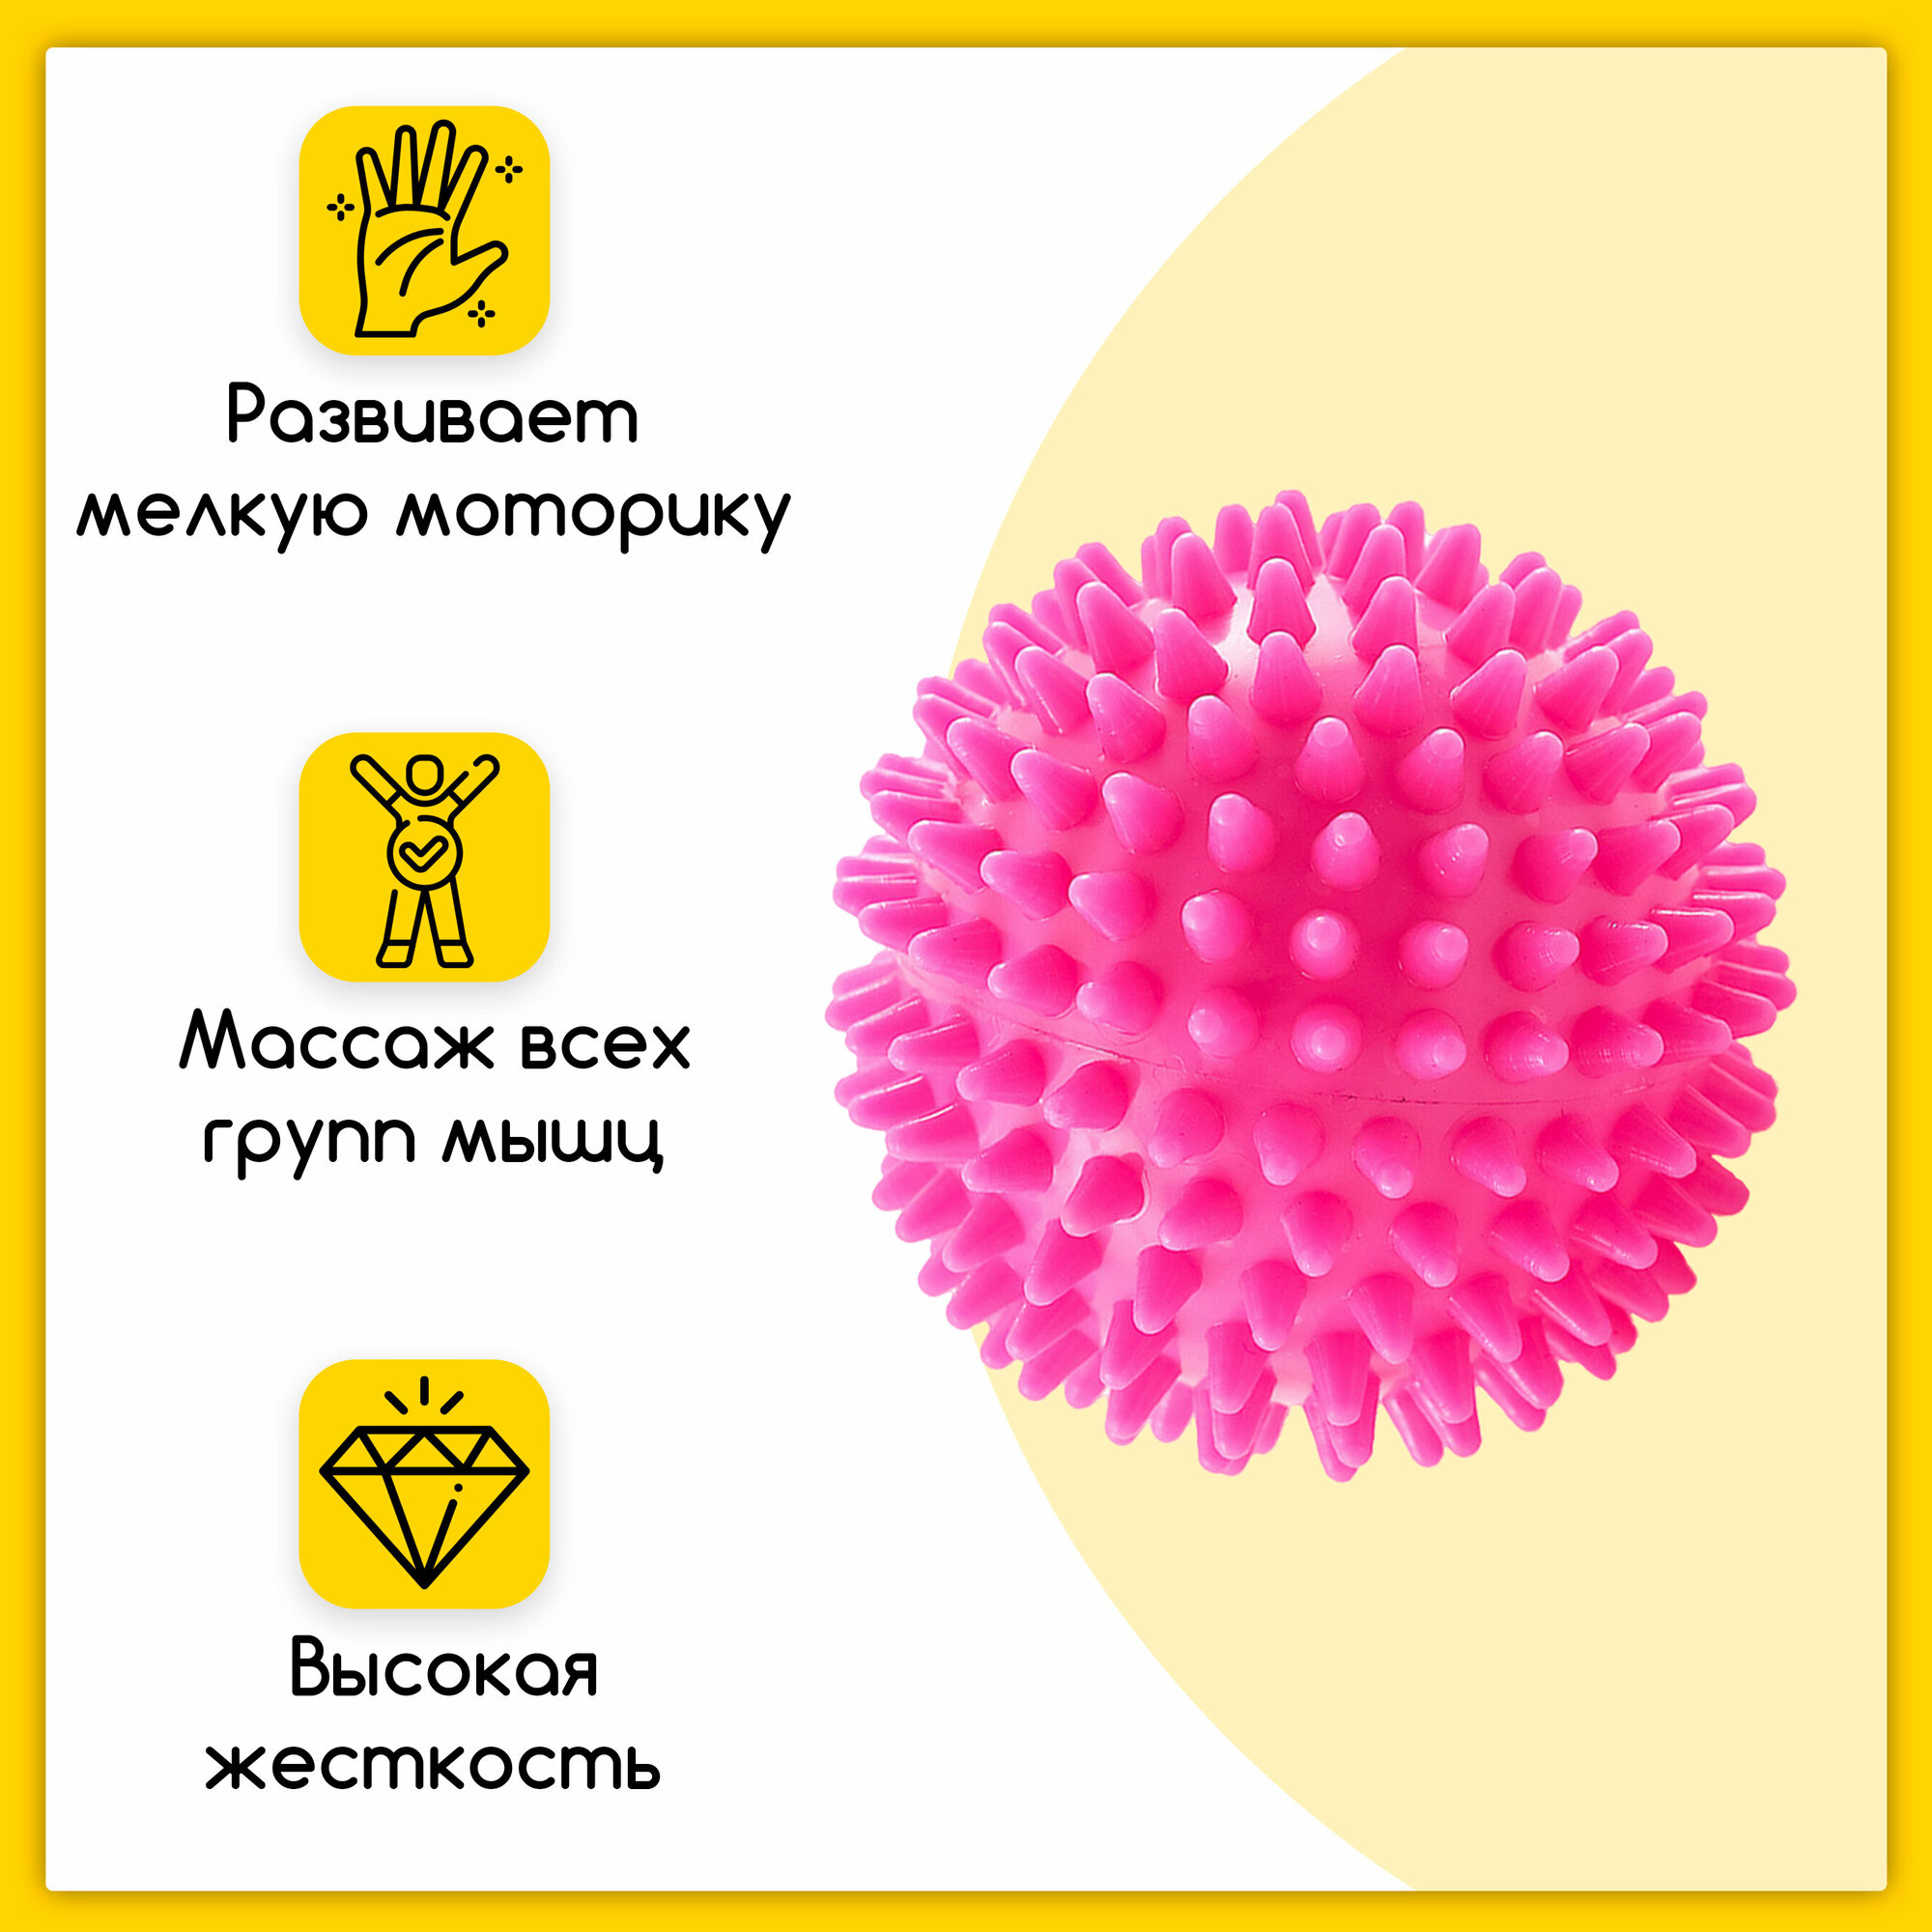 Мяч-шар массажный с шипами, ежик жесткий для проработки мышц, Ø 8.5 см, розовый